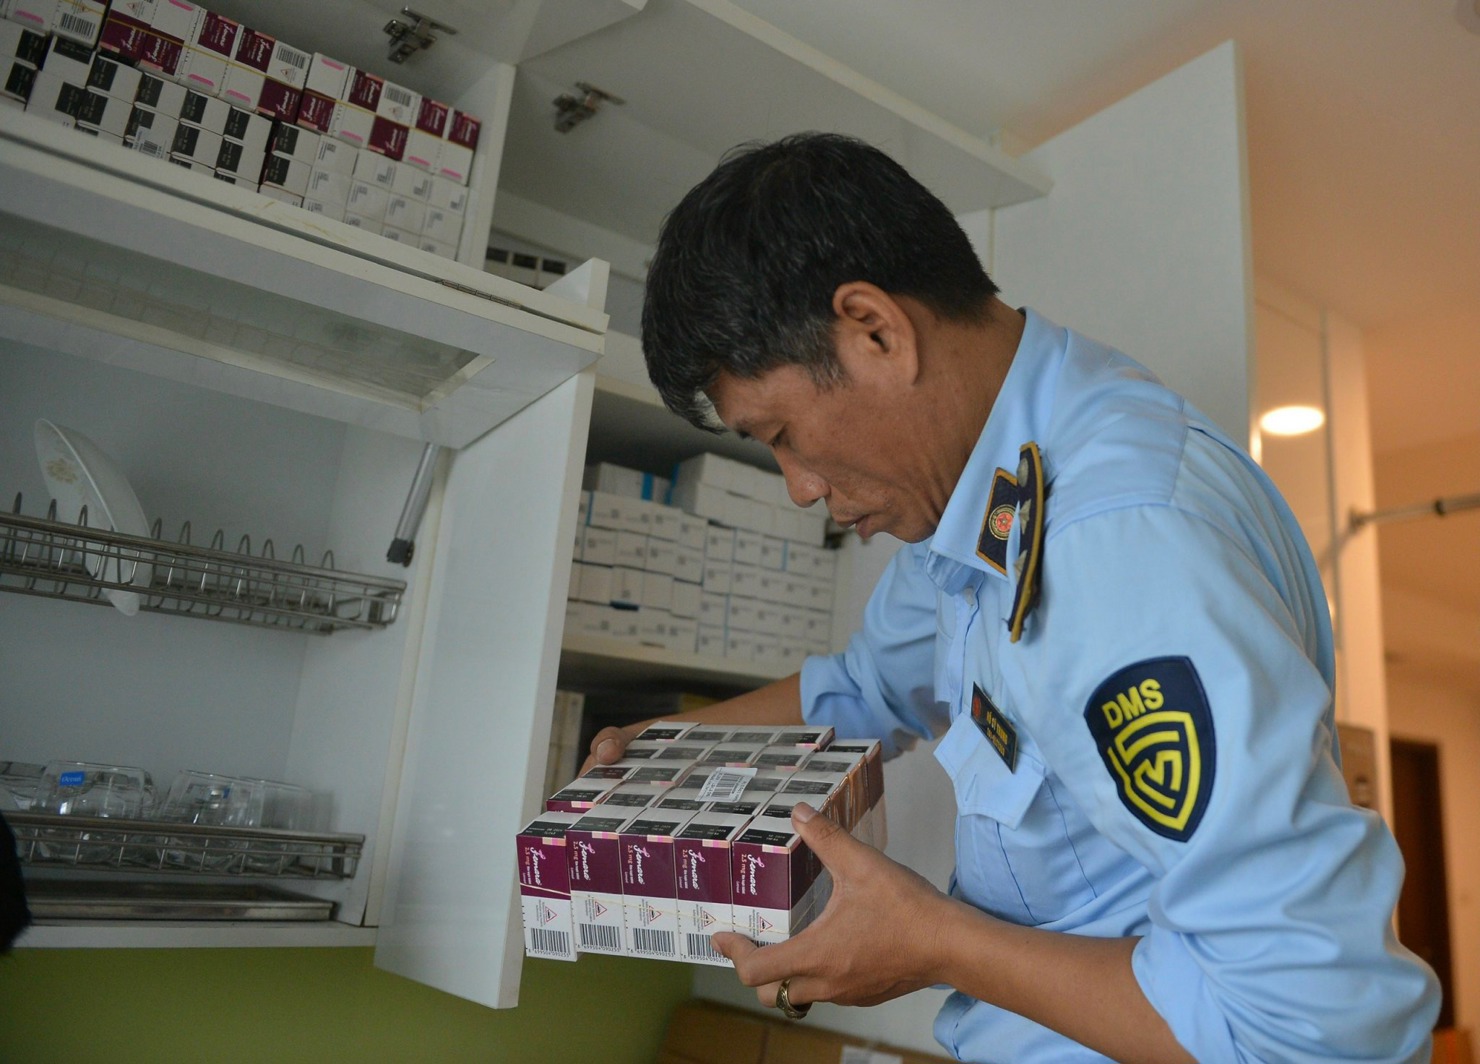 Phát hiện kho thuốc tây bất hợp pháp tại căn hộ chung cư cao cấp ở Hà Nội - Ảnh 1